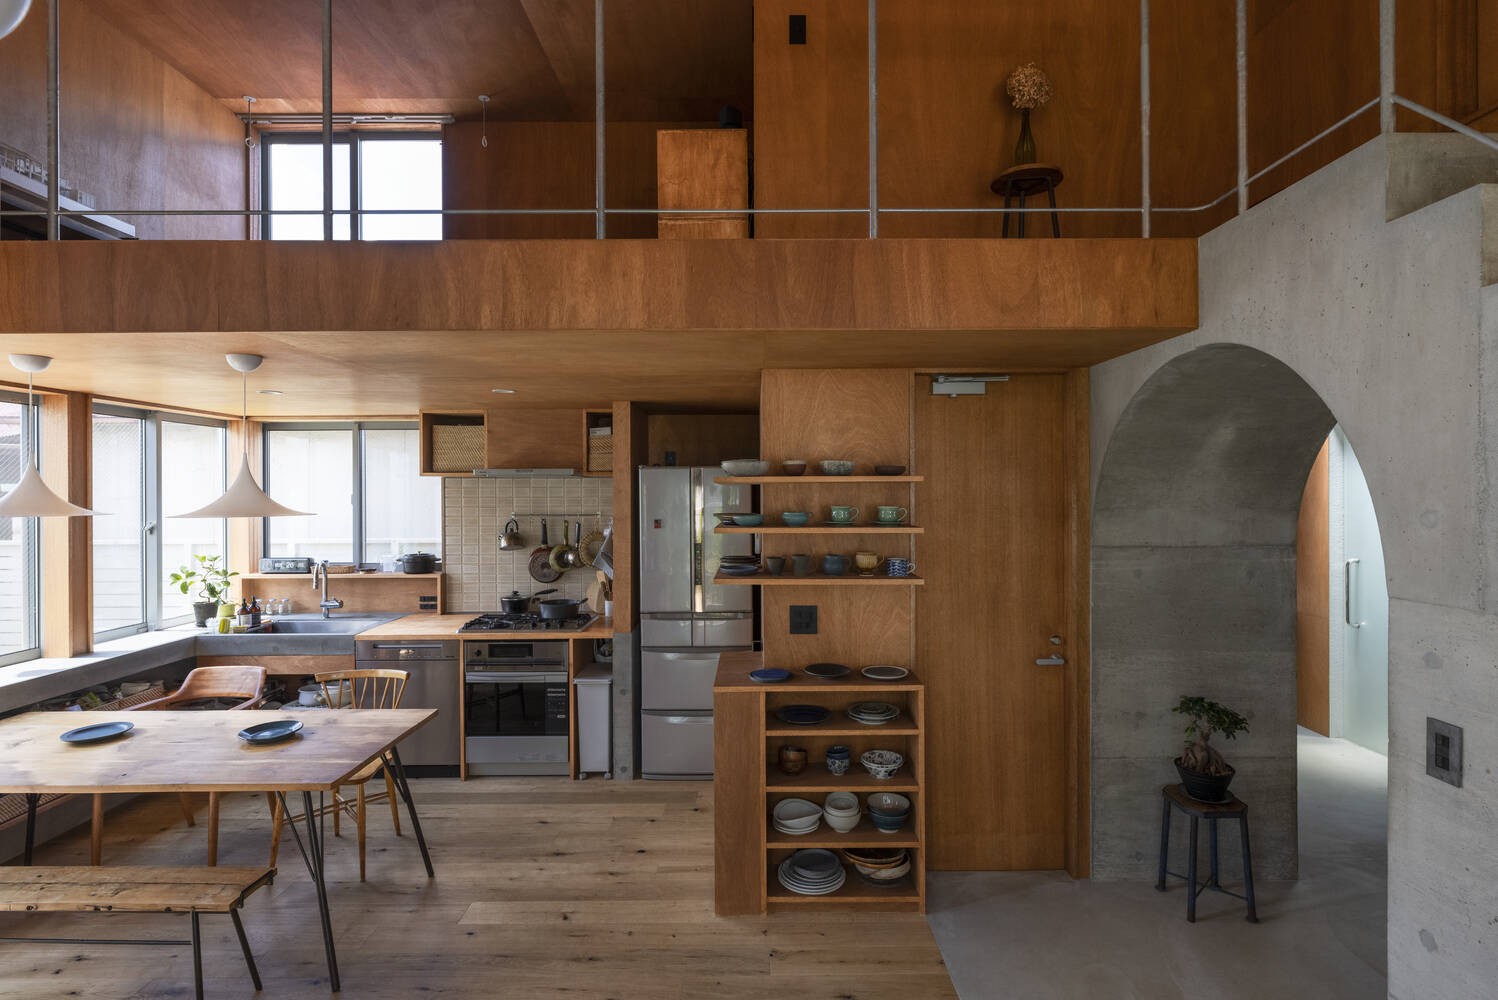 
Phần tủ bếp ở phía trên cao đều được giản lược, giúp cho không gian nấu ăn trong House in Akishima trở nên thông thoáng và tiện dụng hơn
